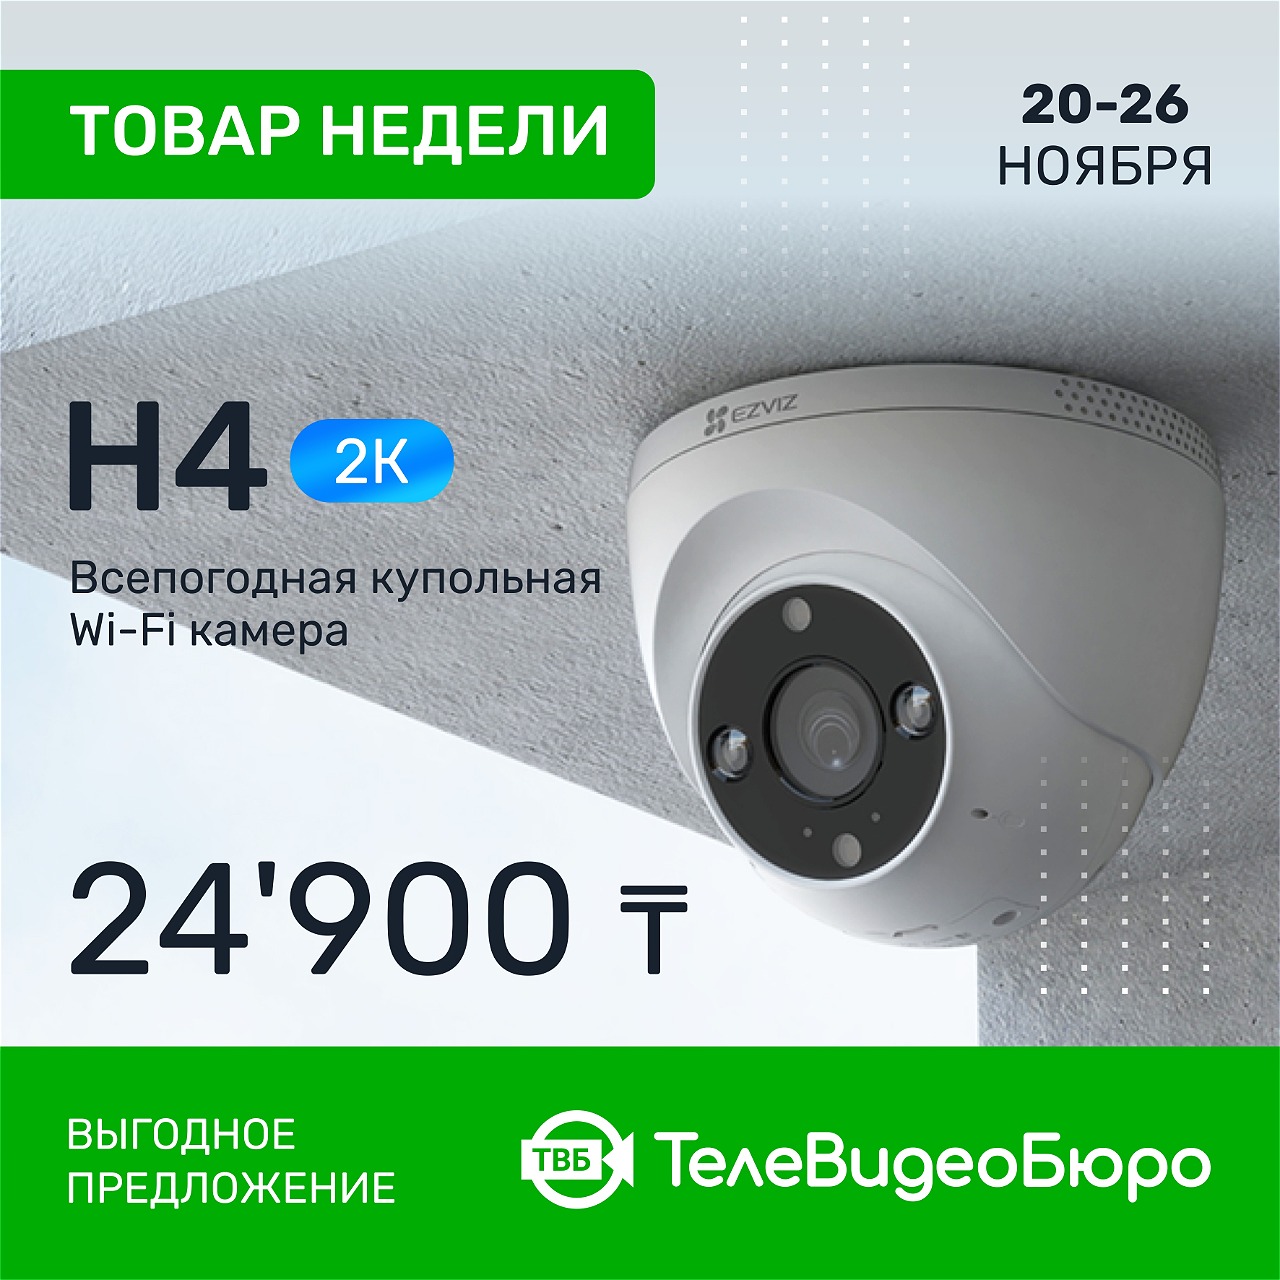 Товар Недели в Магазине Систем Безопасности “ТелеВидеоБюро” – WiFi<br>камера Ezviz H4 2K (CS-H4-3WKFL)!